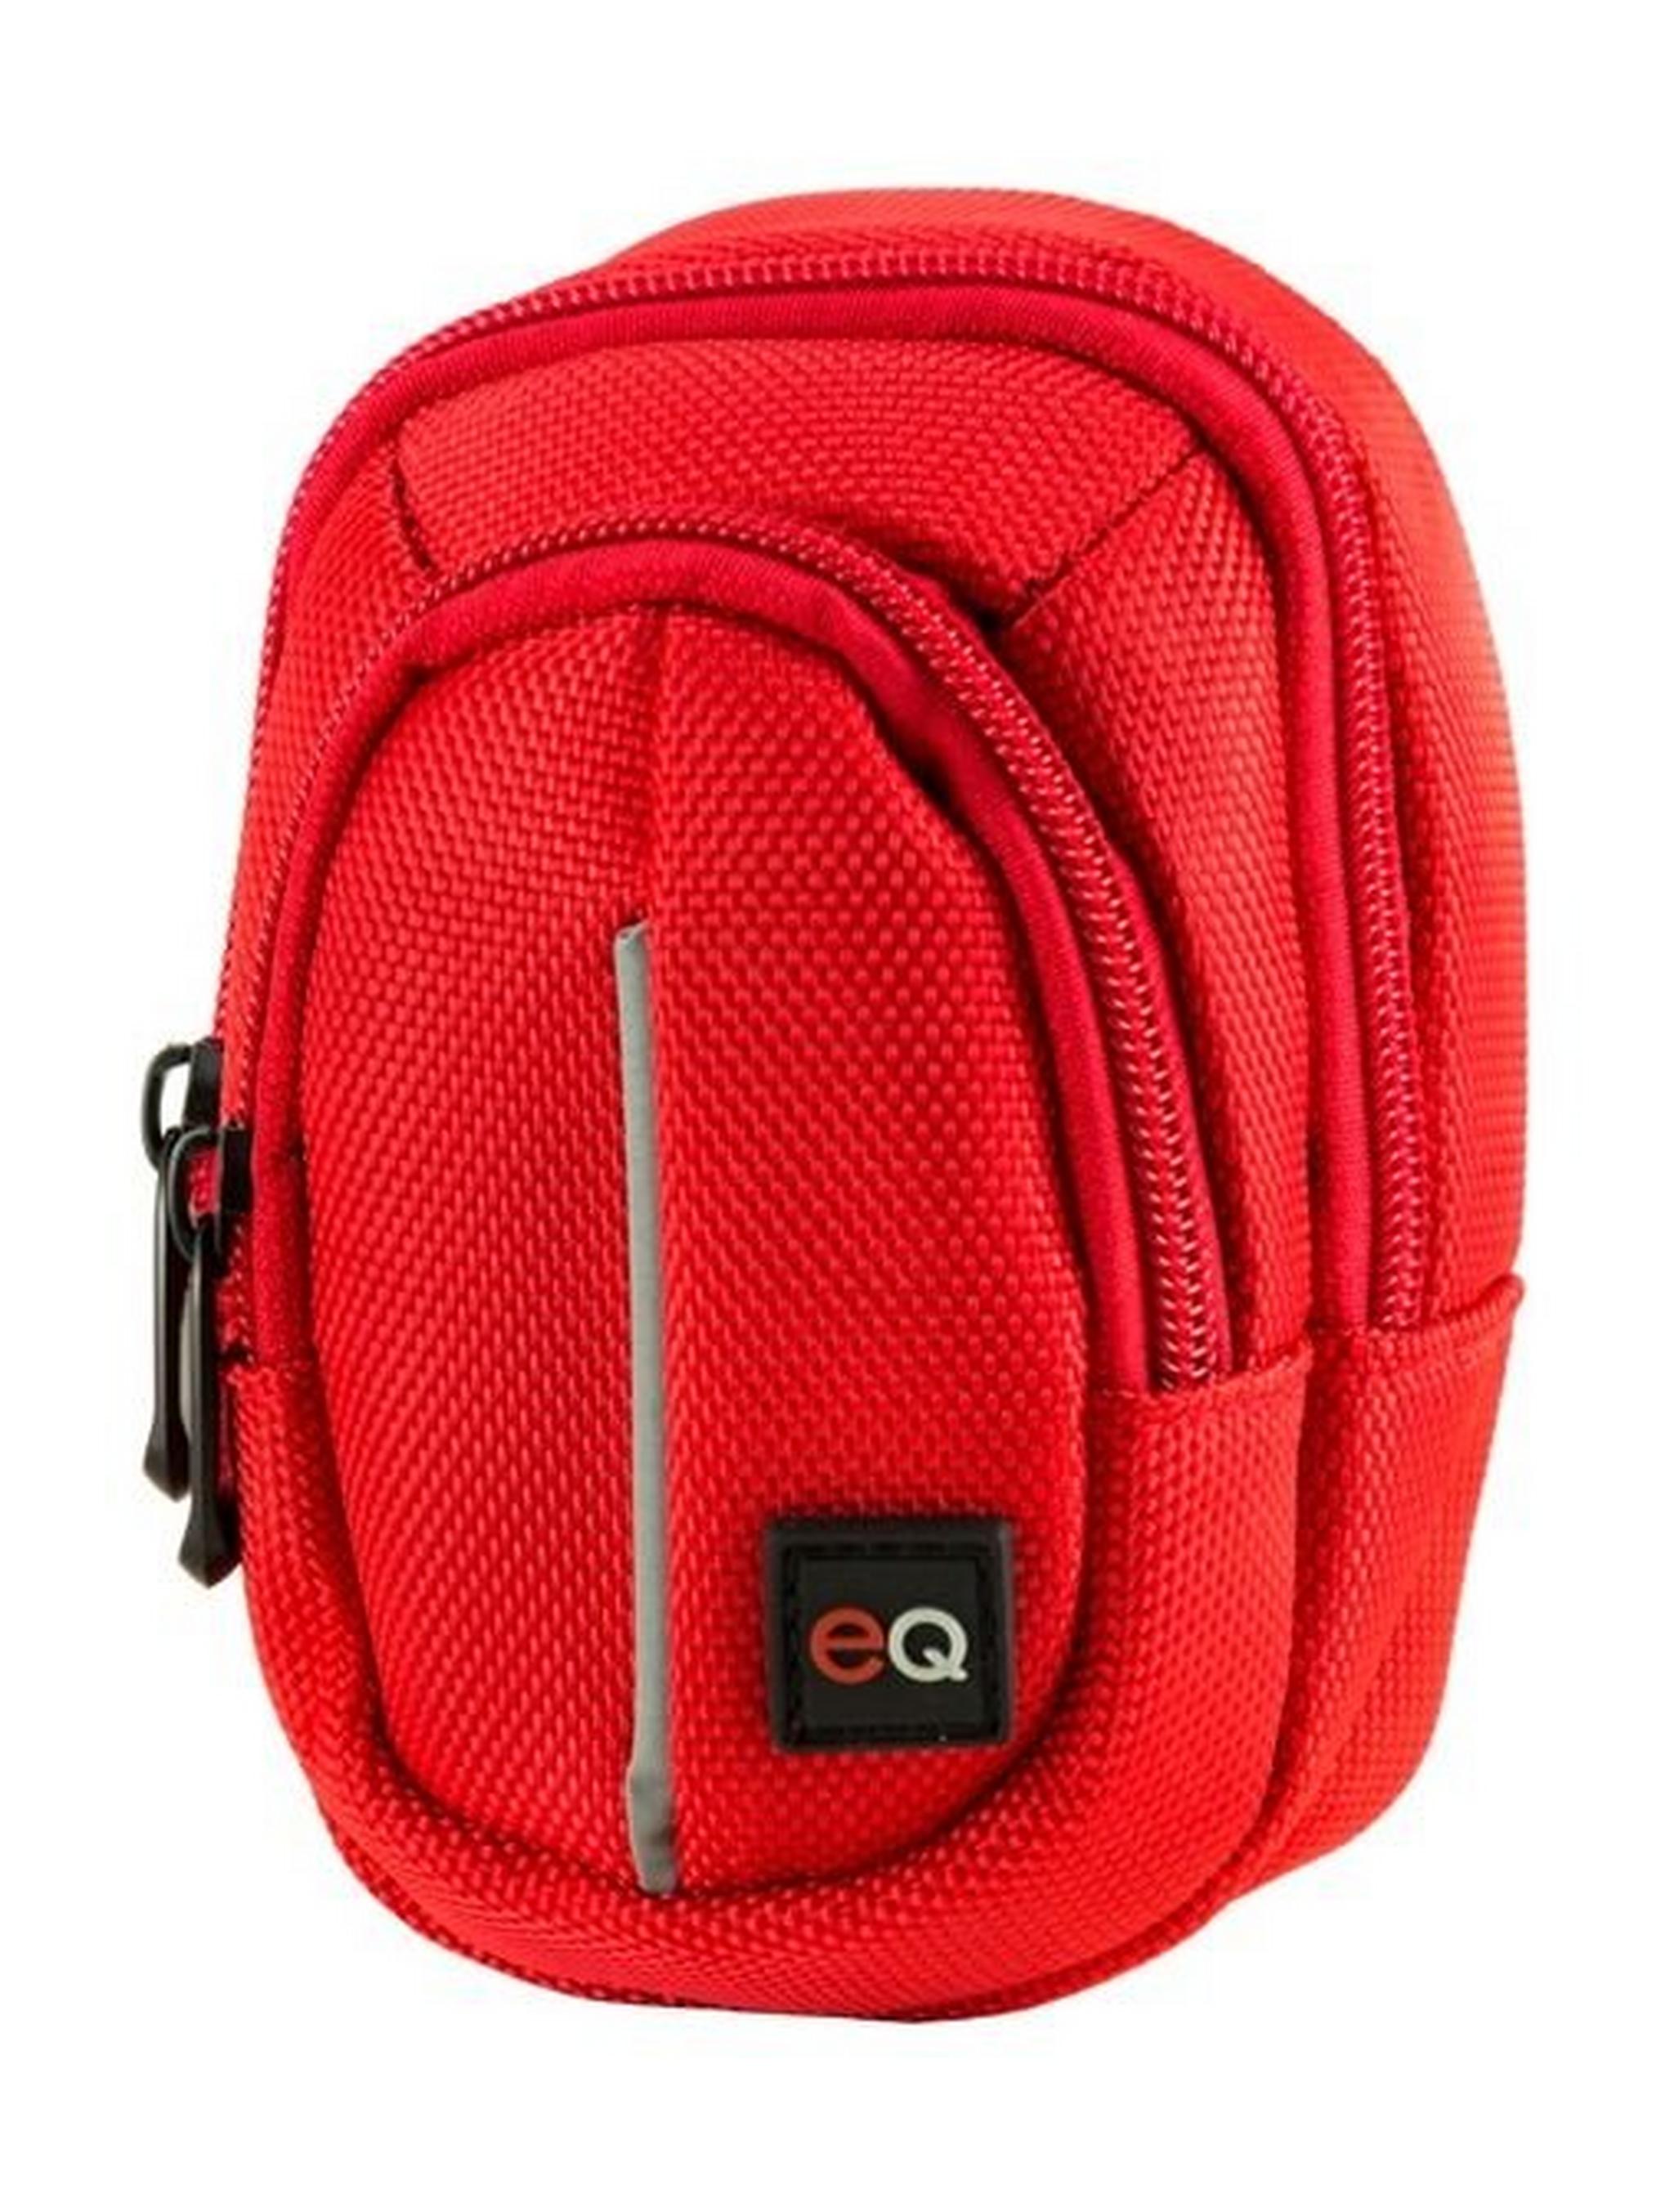 EQ Compact Camera Case - Red